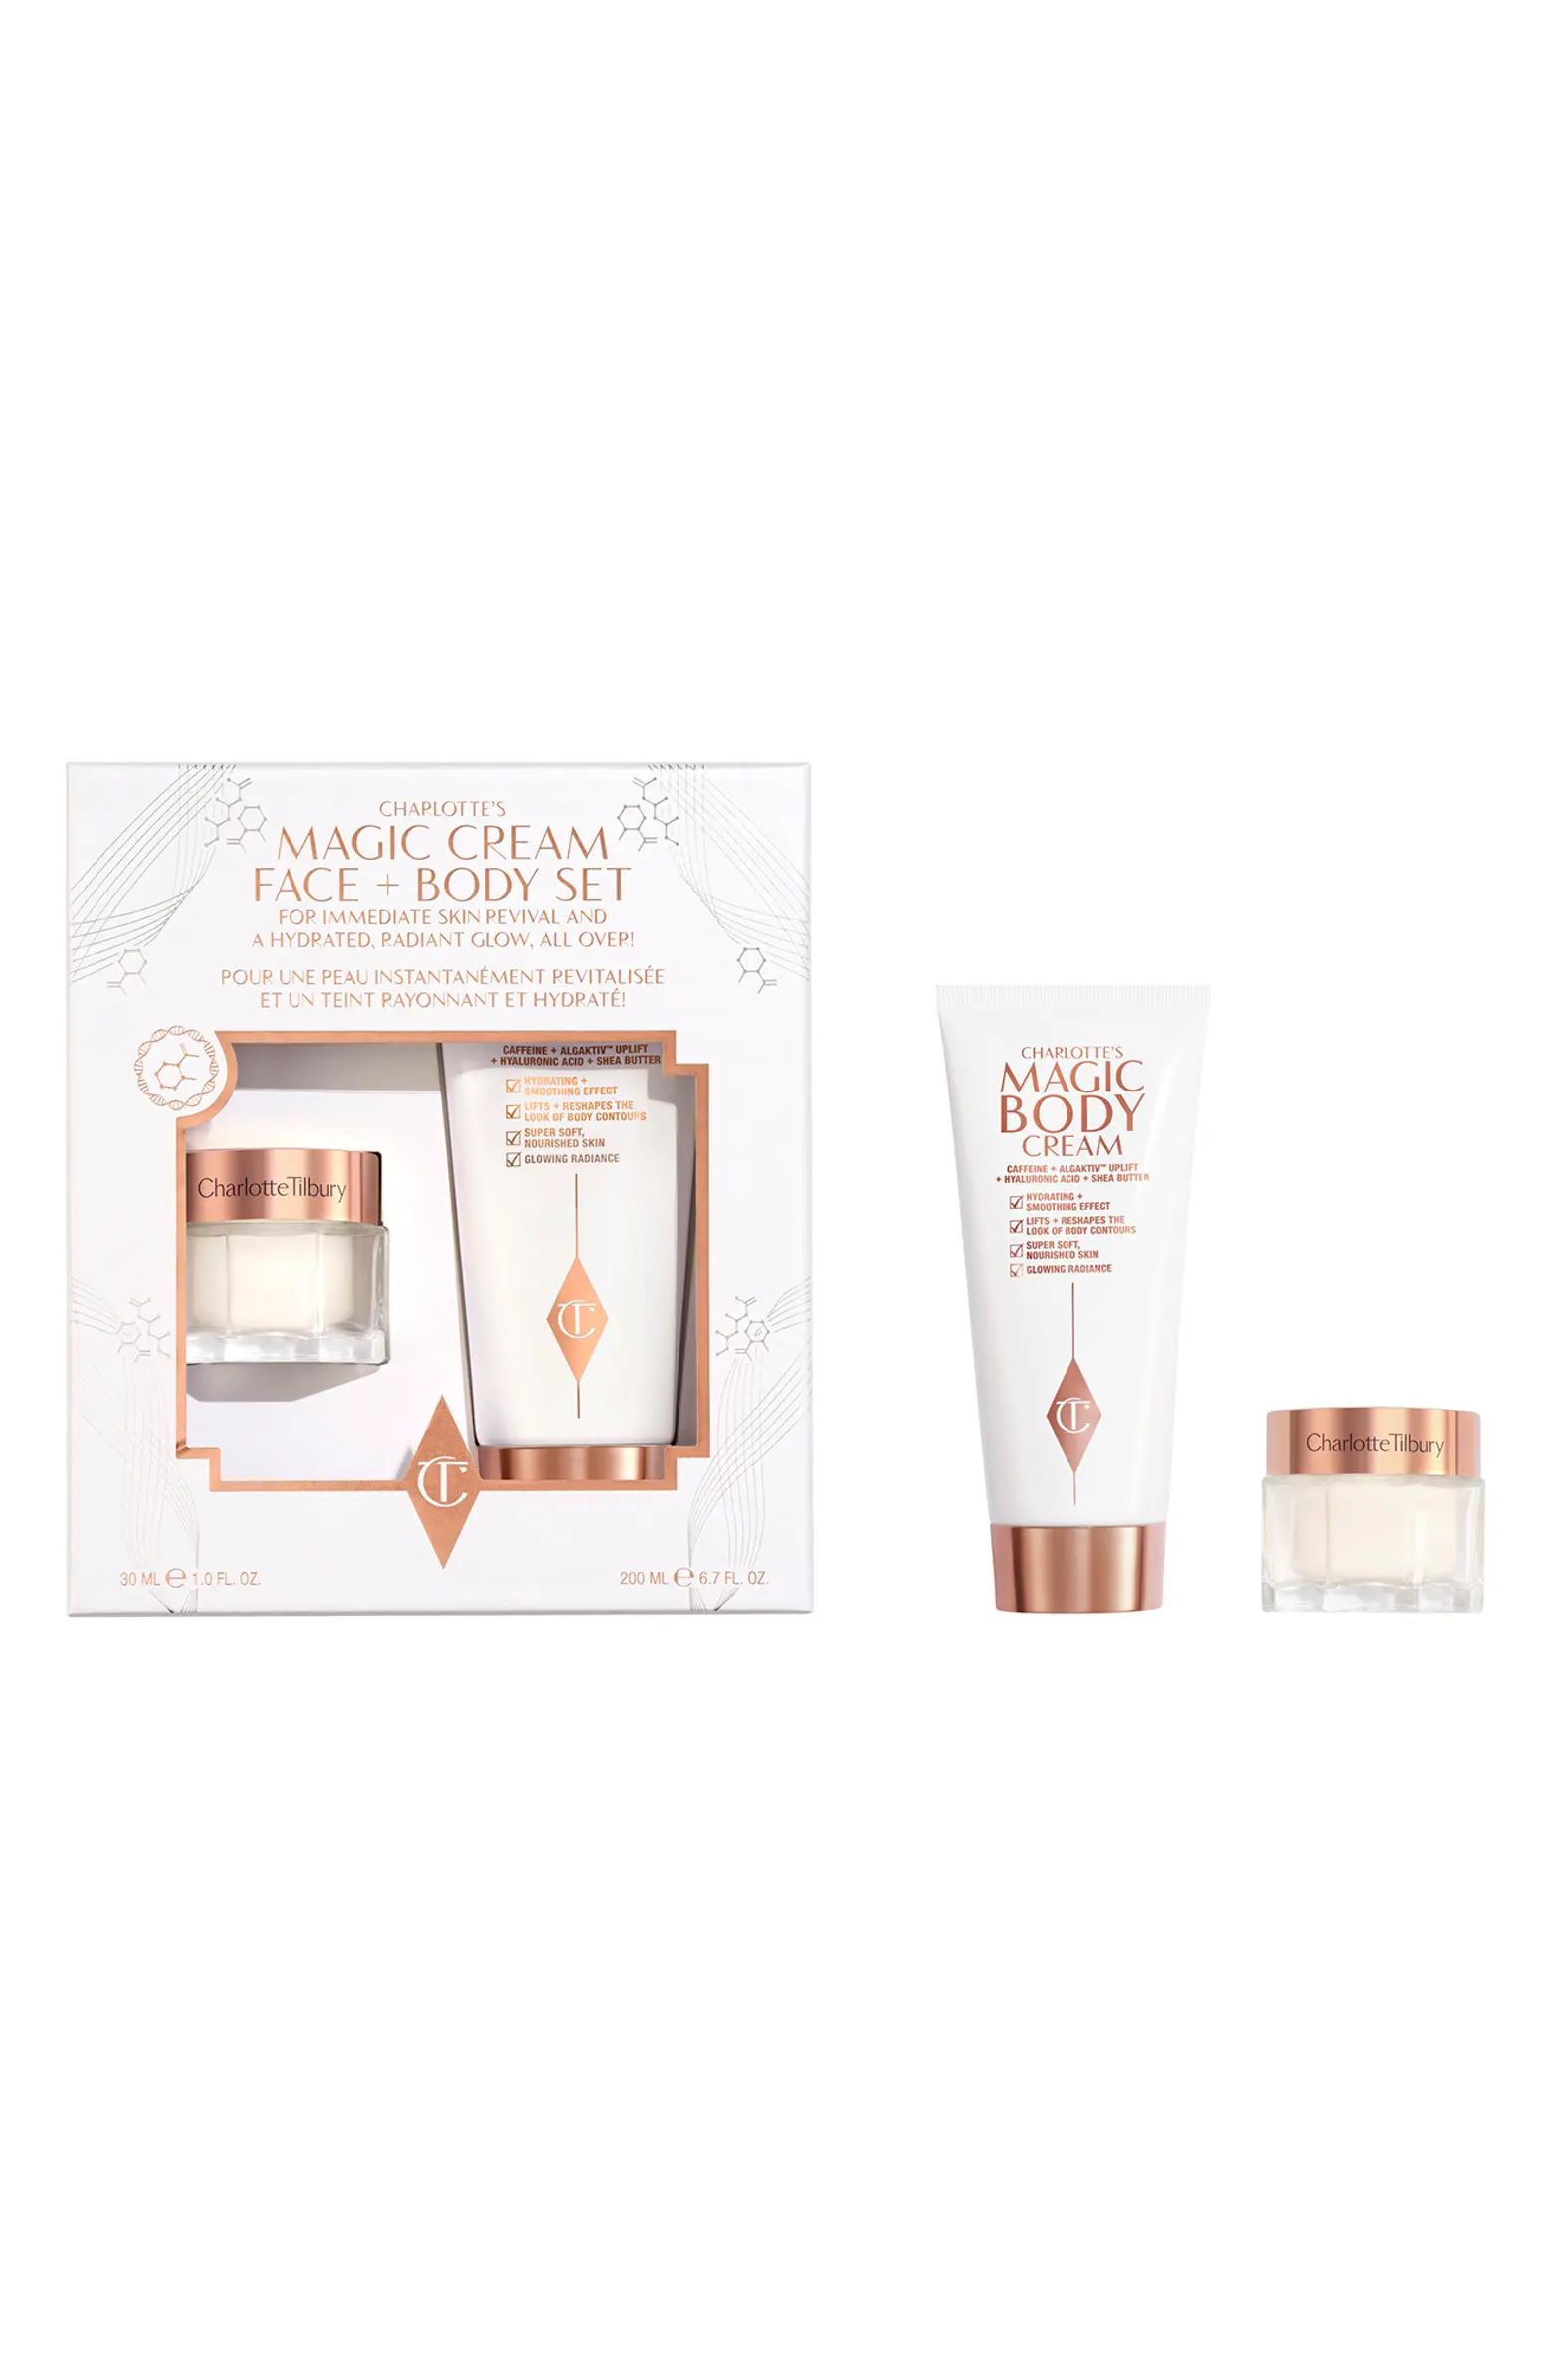 Charlotte Tilbury Magic Cream Face & Body Set $130 Value | Nordstrom | Nordstrom